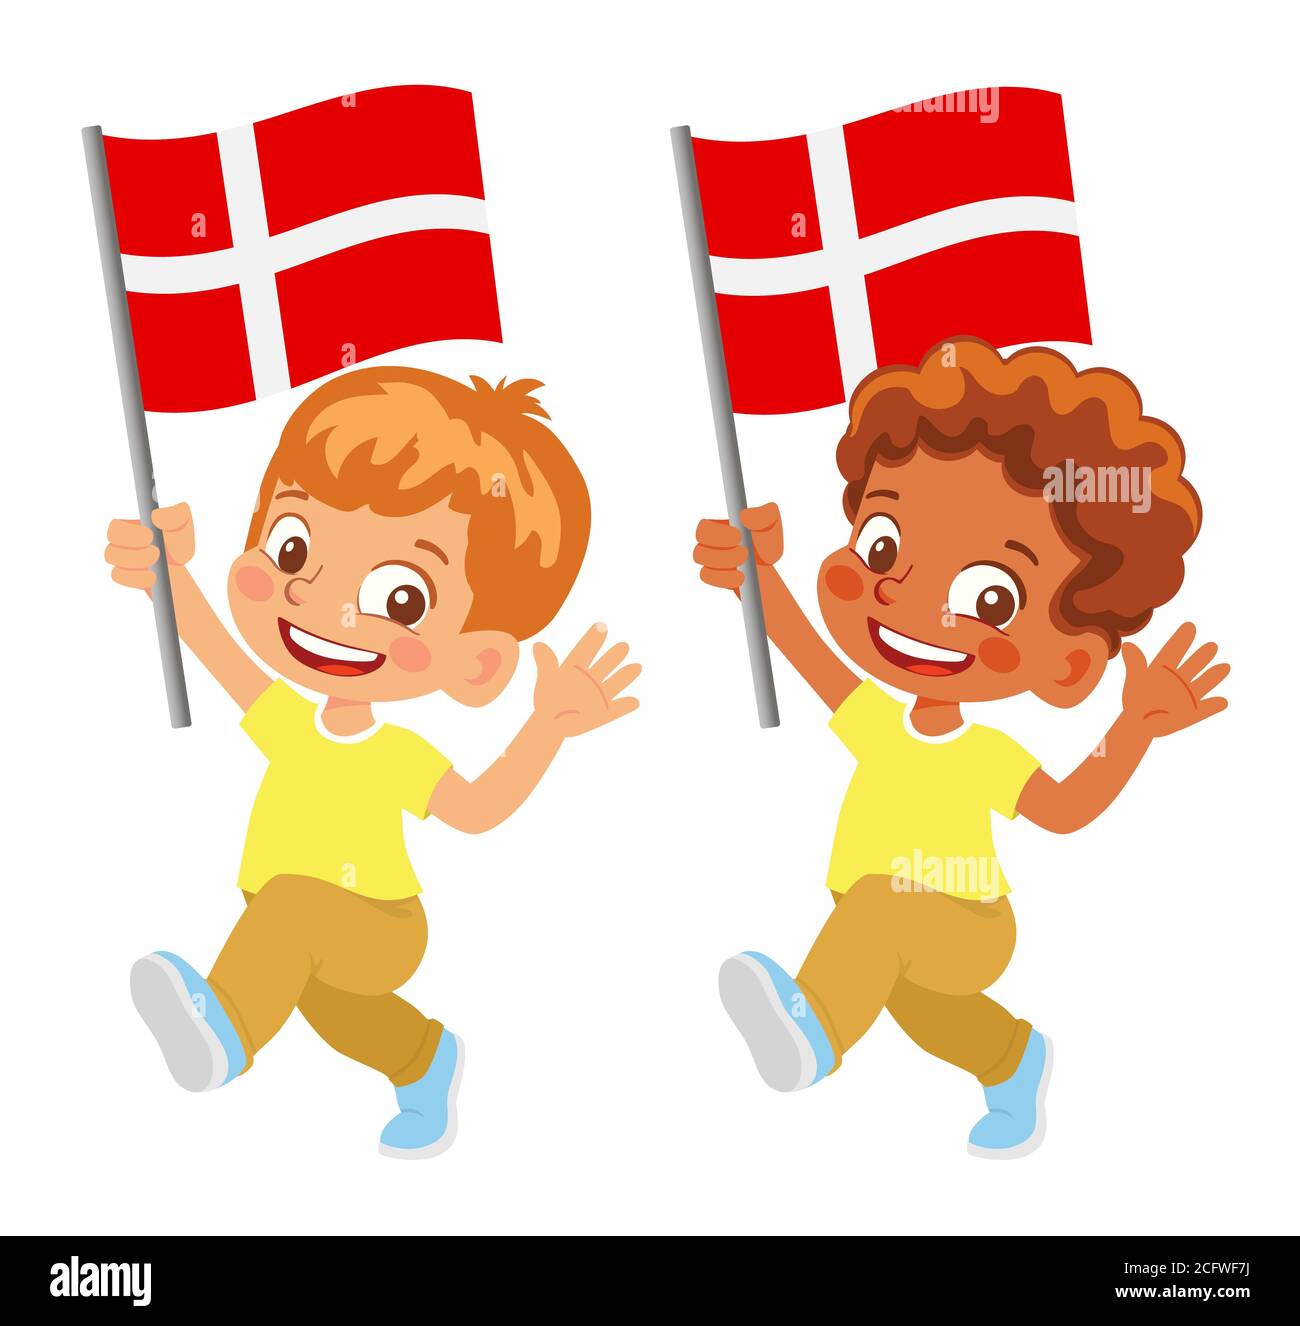 Denmark flag in hand. Children holding flag. National flag of Denmark Stock Photo